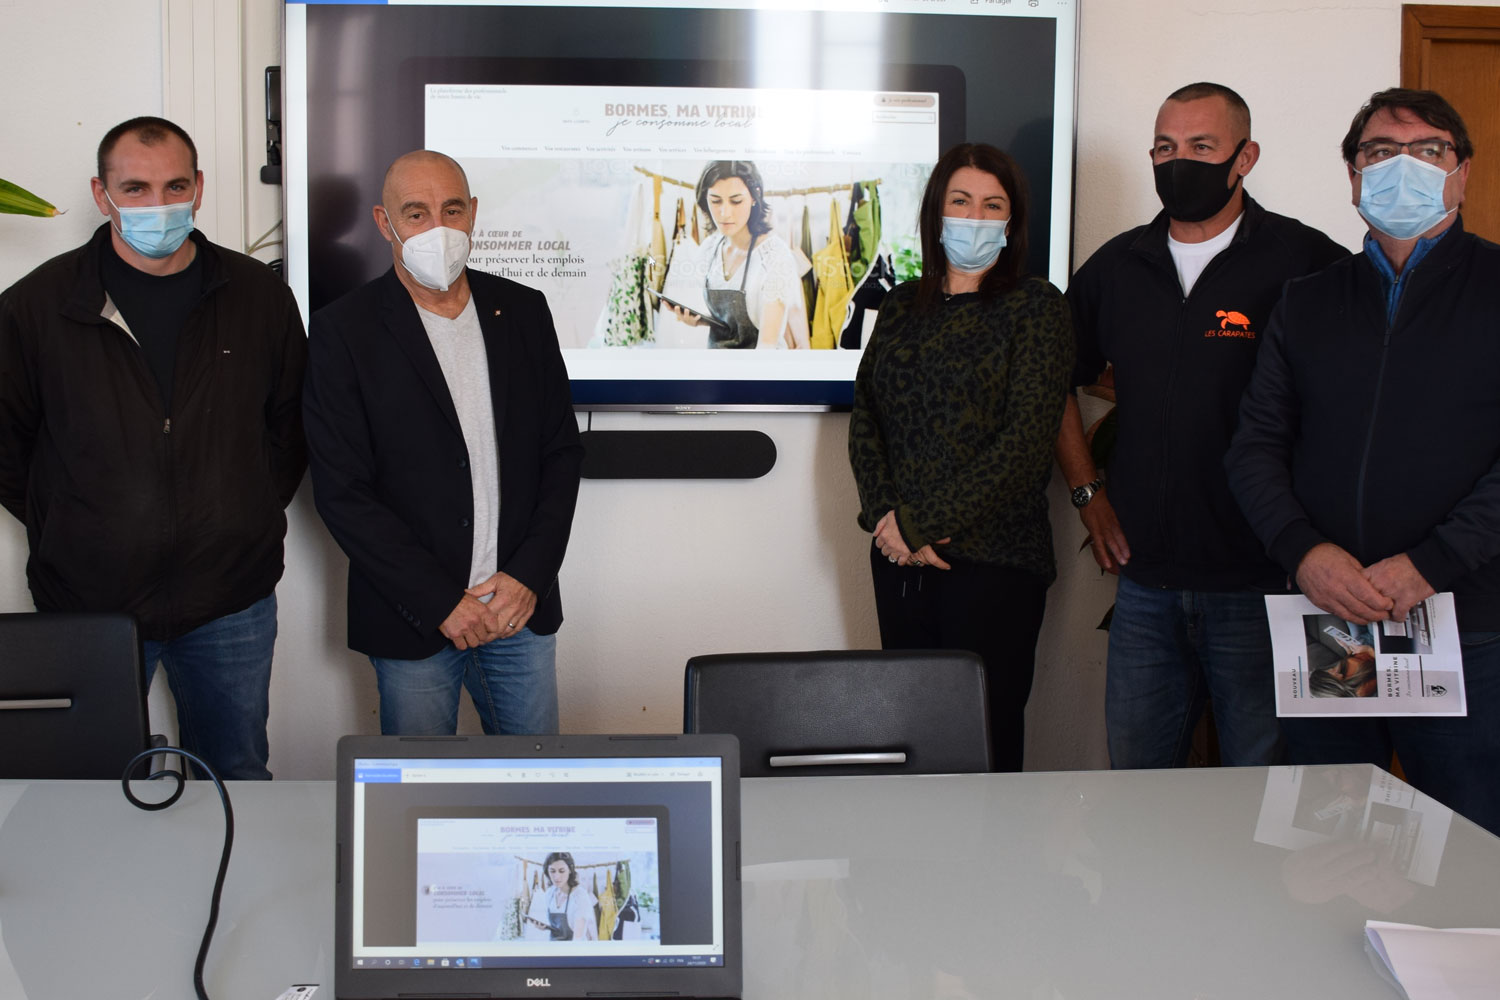 Le maire François Arizzi a présenté aux présidents des quatre associations de commerçants le projet "Bormes, ma vitrine - je consomme local"